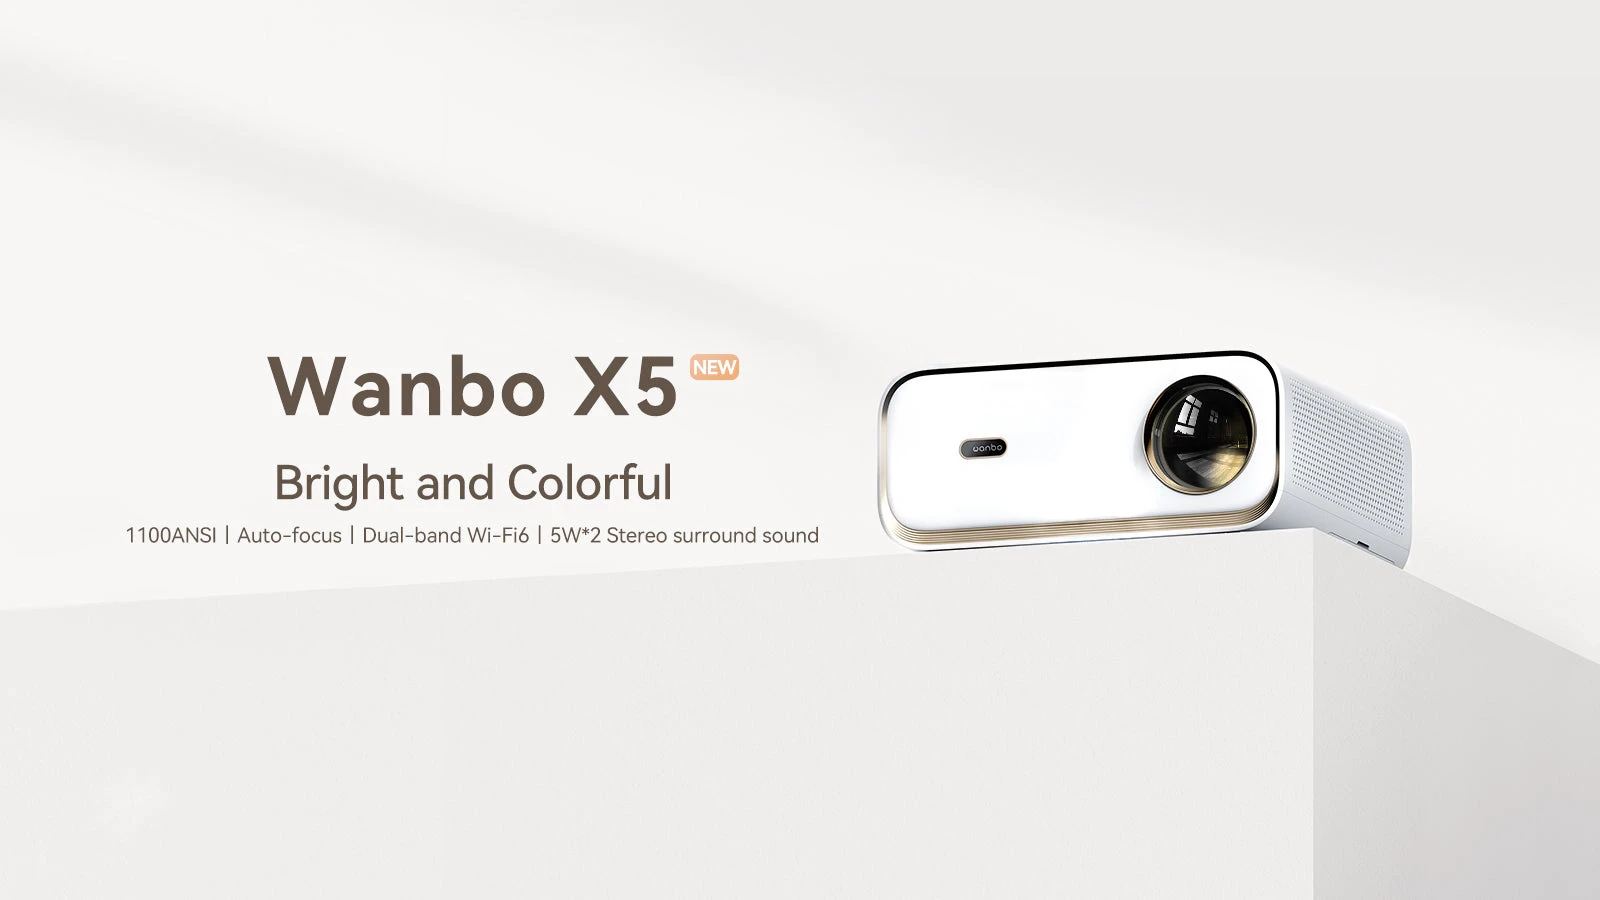 Wanbo X5 - sindssygt billig, vi får også den kraftigste Wanbo projektor og lærred i gave